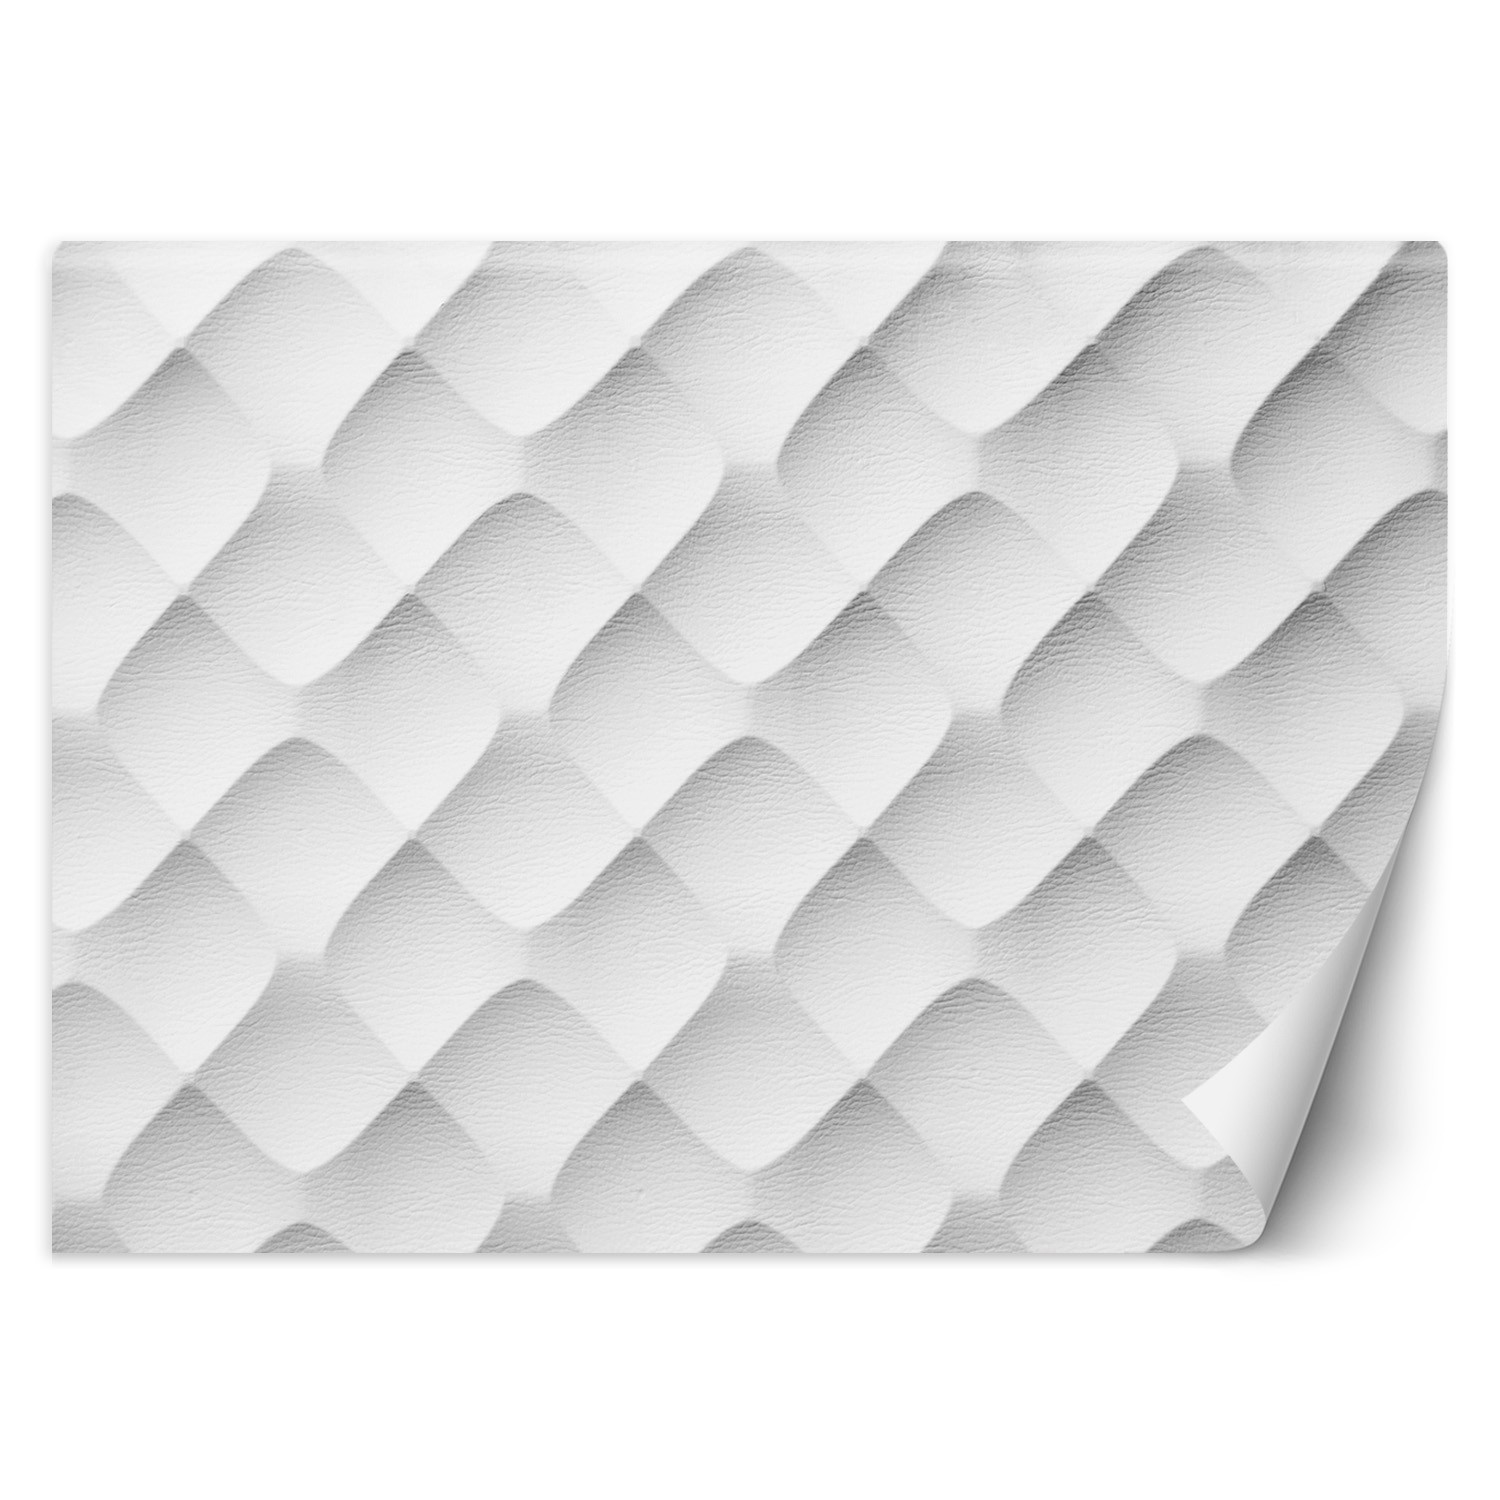 Trend24 – Behang – Abstract Patroon – Behangpapier – Fotobehang 3D – Behang Woonkamer – 250x175x2 cm – Incl. behanglijm